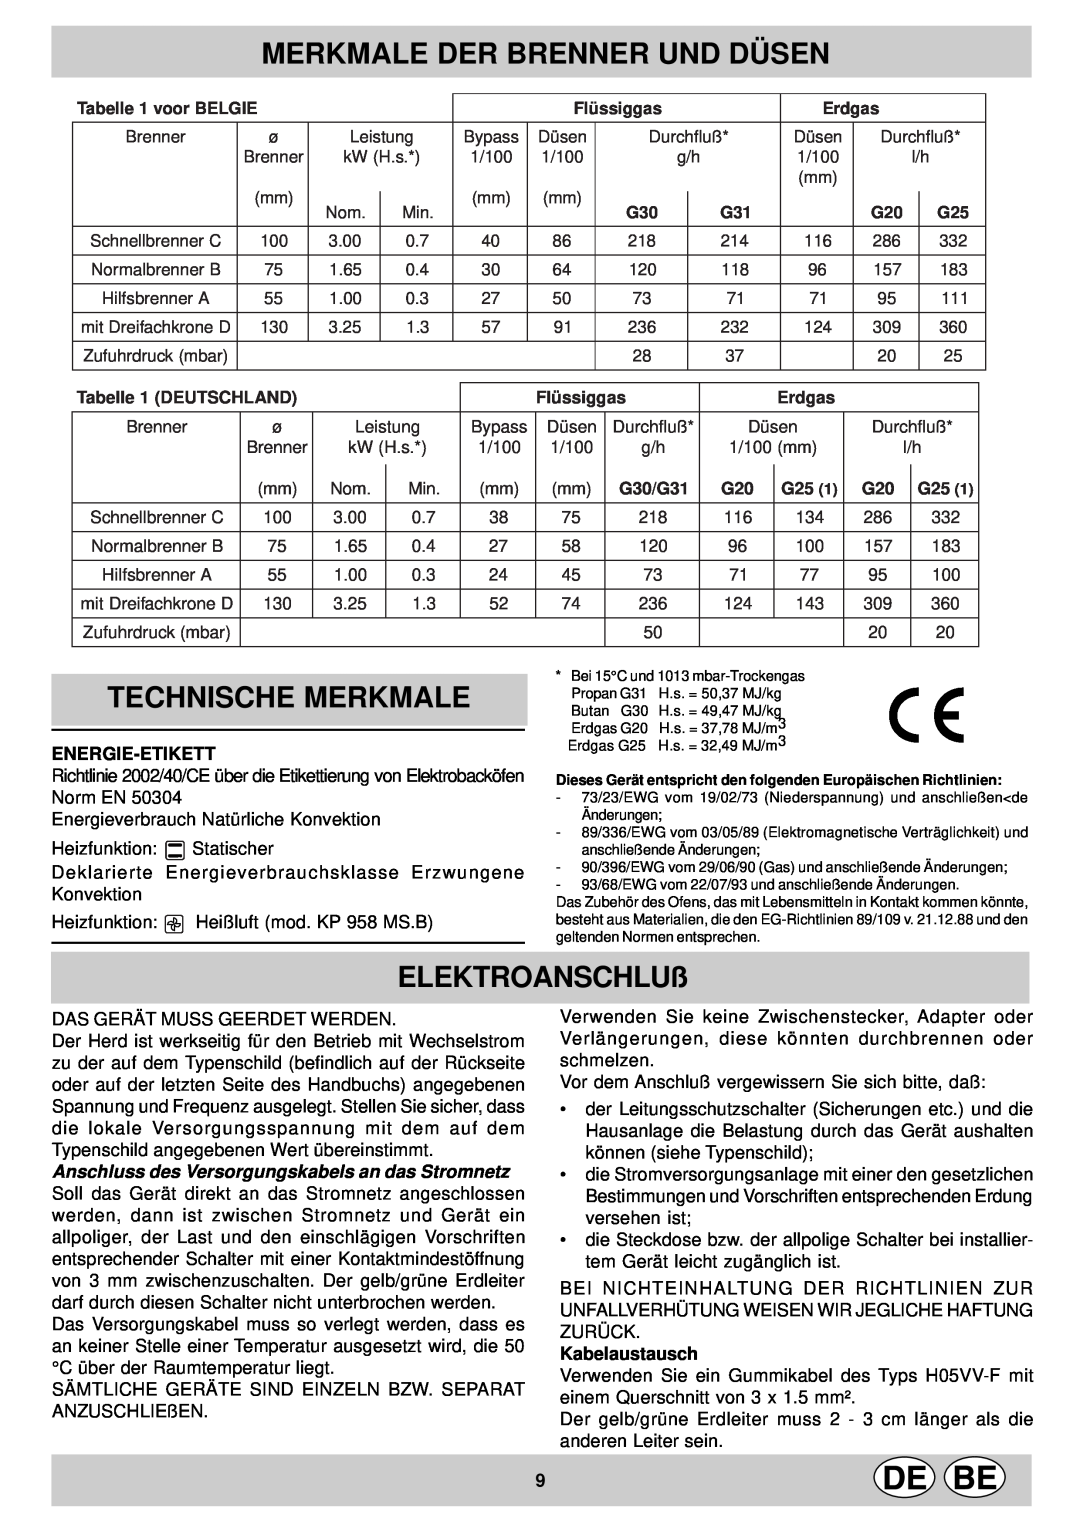 Indesit KP9507EB Merkmale Der Brenner Und Düsen, Technische Merkmale, ELEKTROANSCHLUß, Tabelle 1 DEUTSCHLAND, Flü ssiggas 